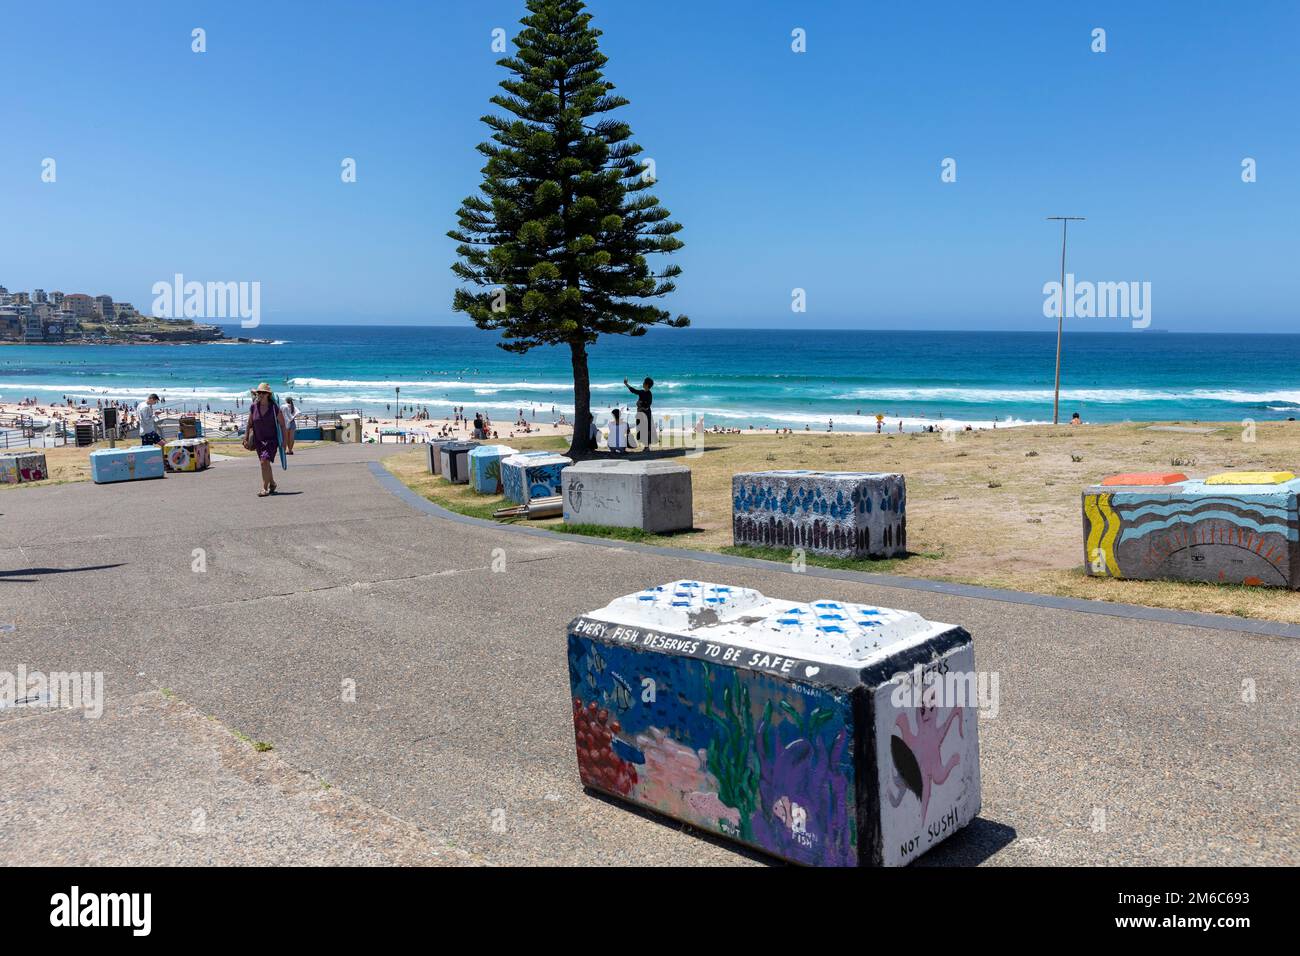 Bondi Beach Sydney, des blocs de béton peints et décorés pour prévenir les menaces de terrorisme ou les personnes qui se conduisent dans la foule sur la plage, Sydney, Australie Banque D'Images